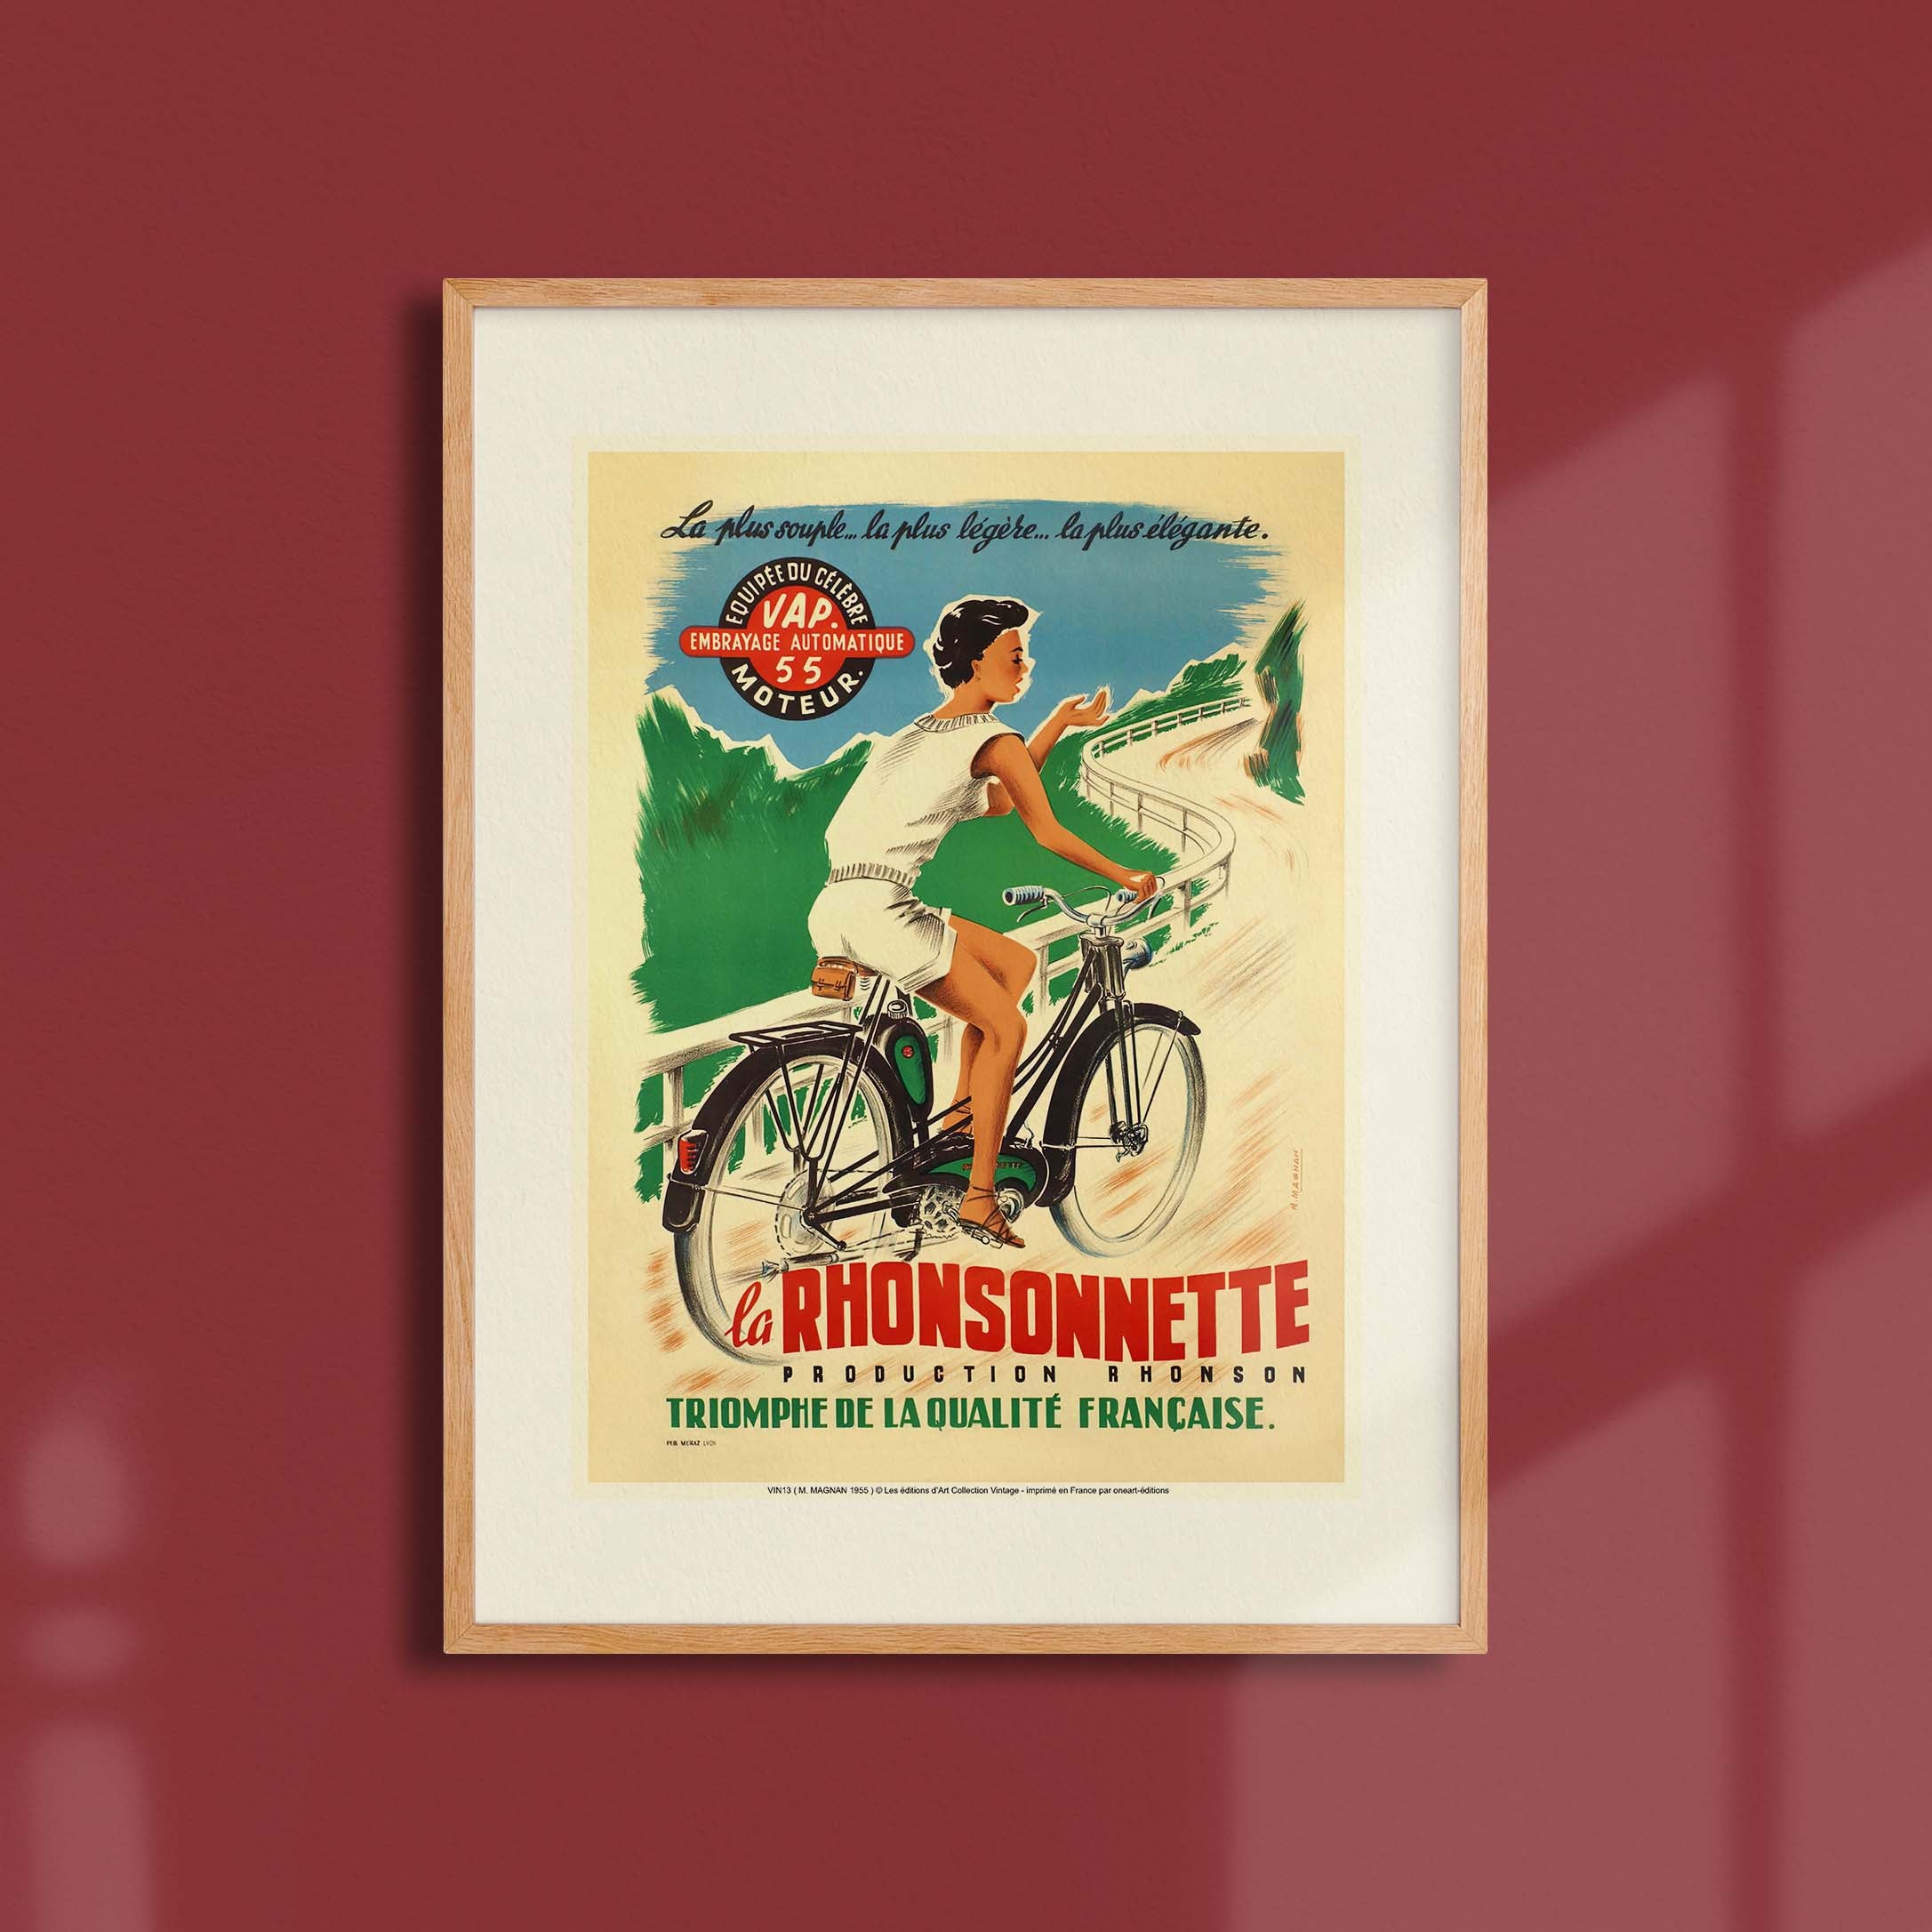 Affiche publicité vintage - La Rhonsonnette-oneart.fr